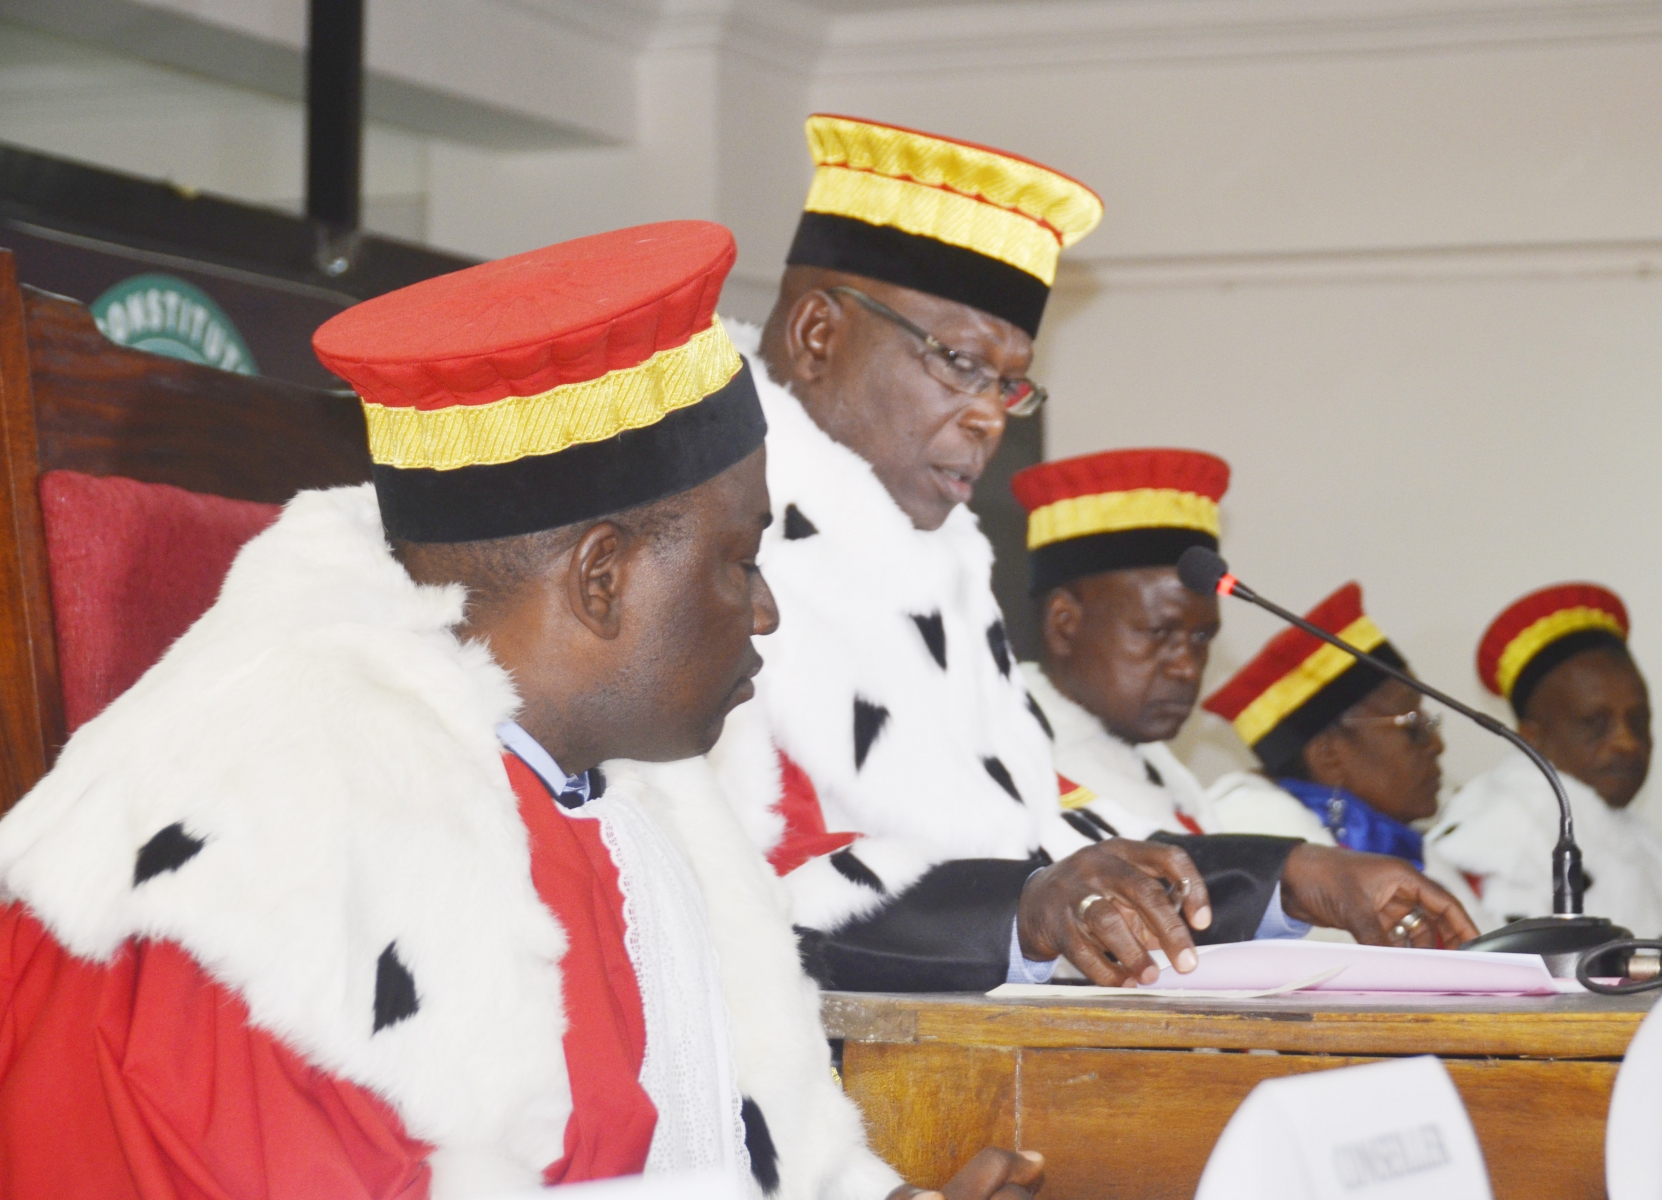 Des juges de la Cour Constitutionnelle